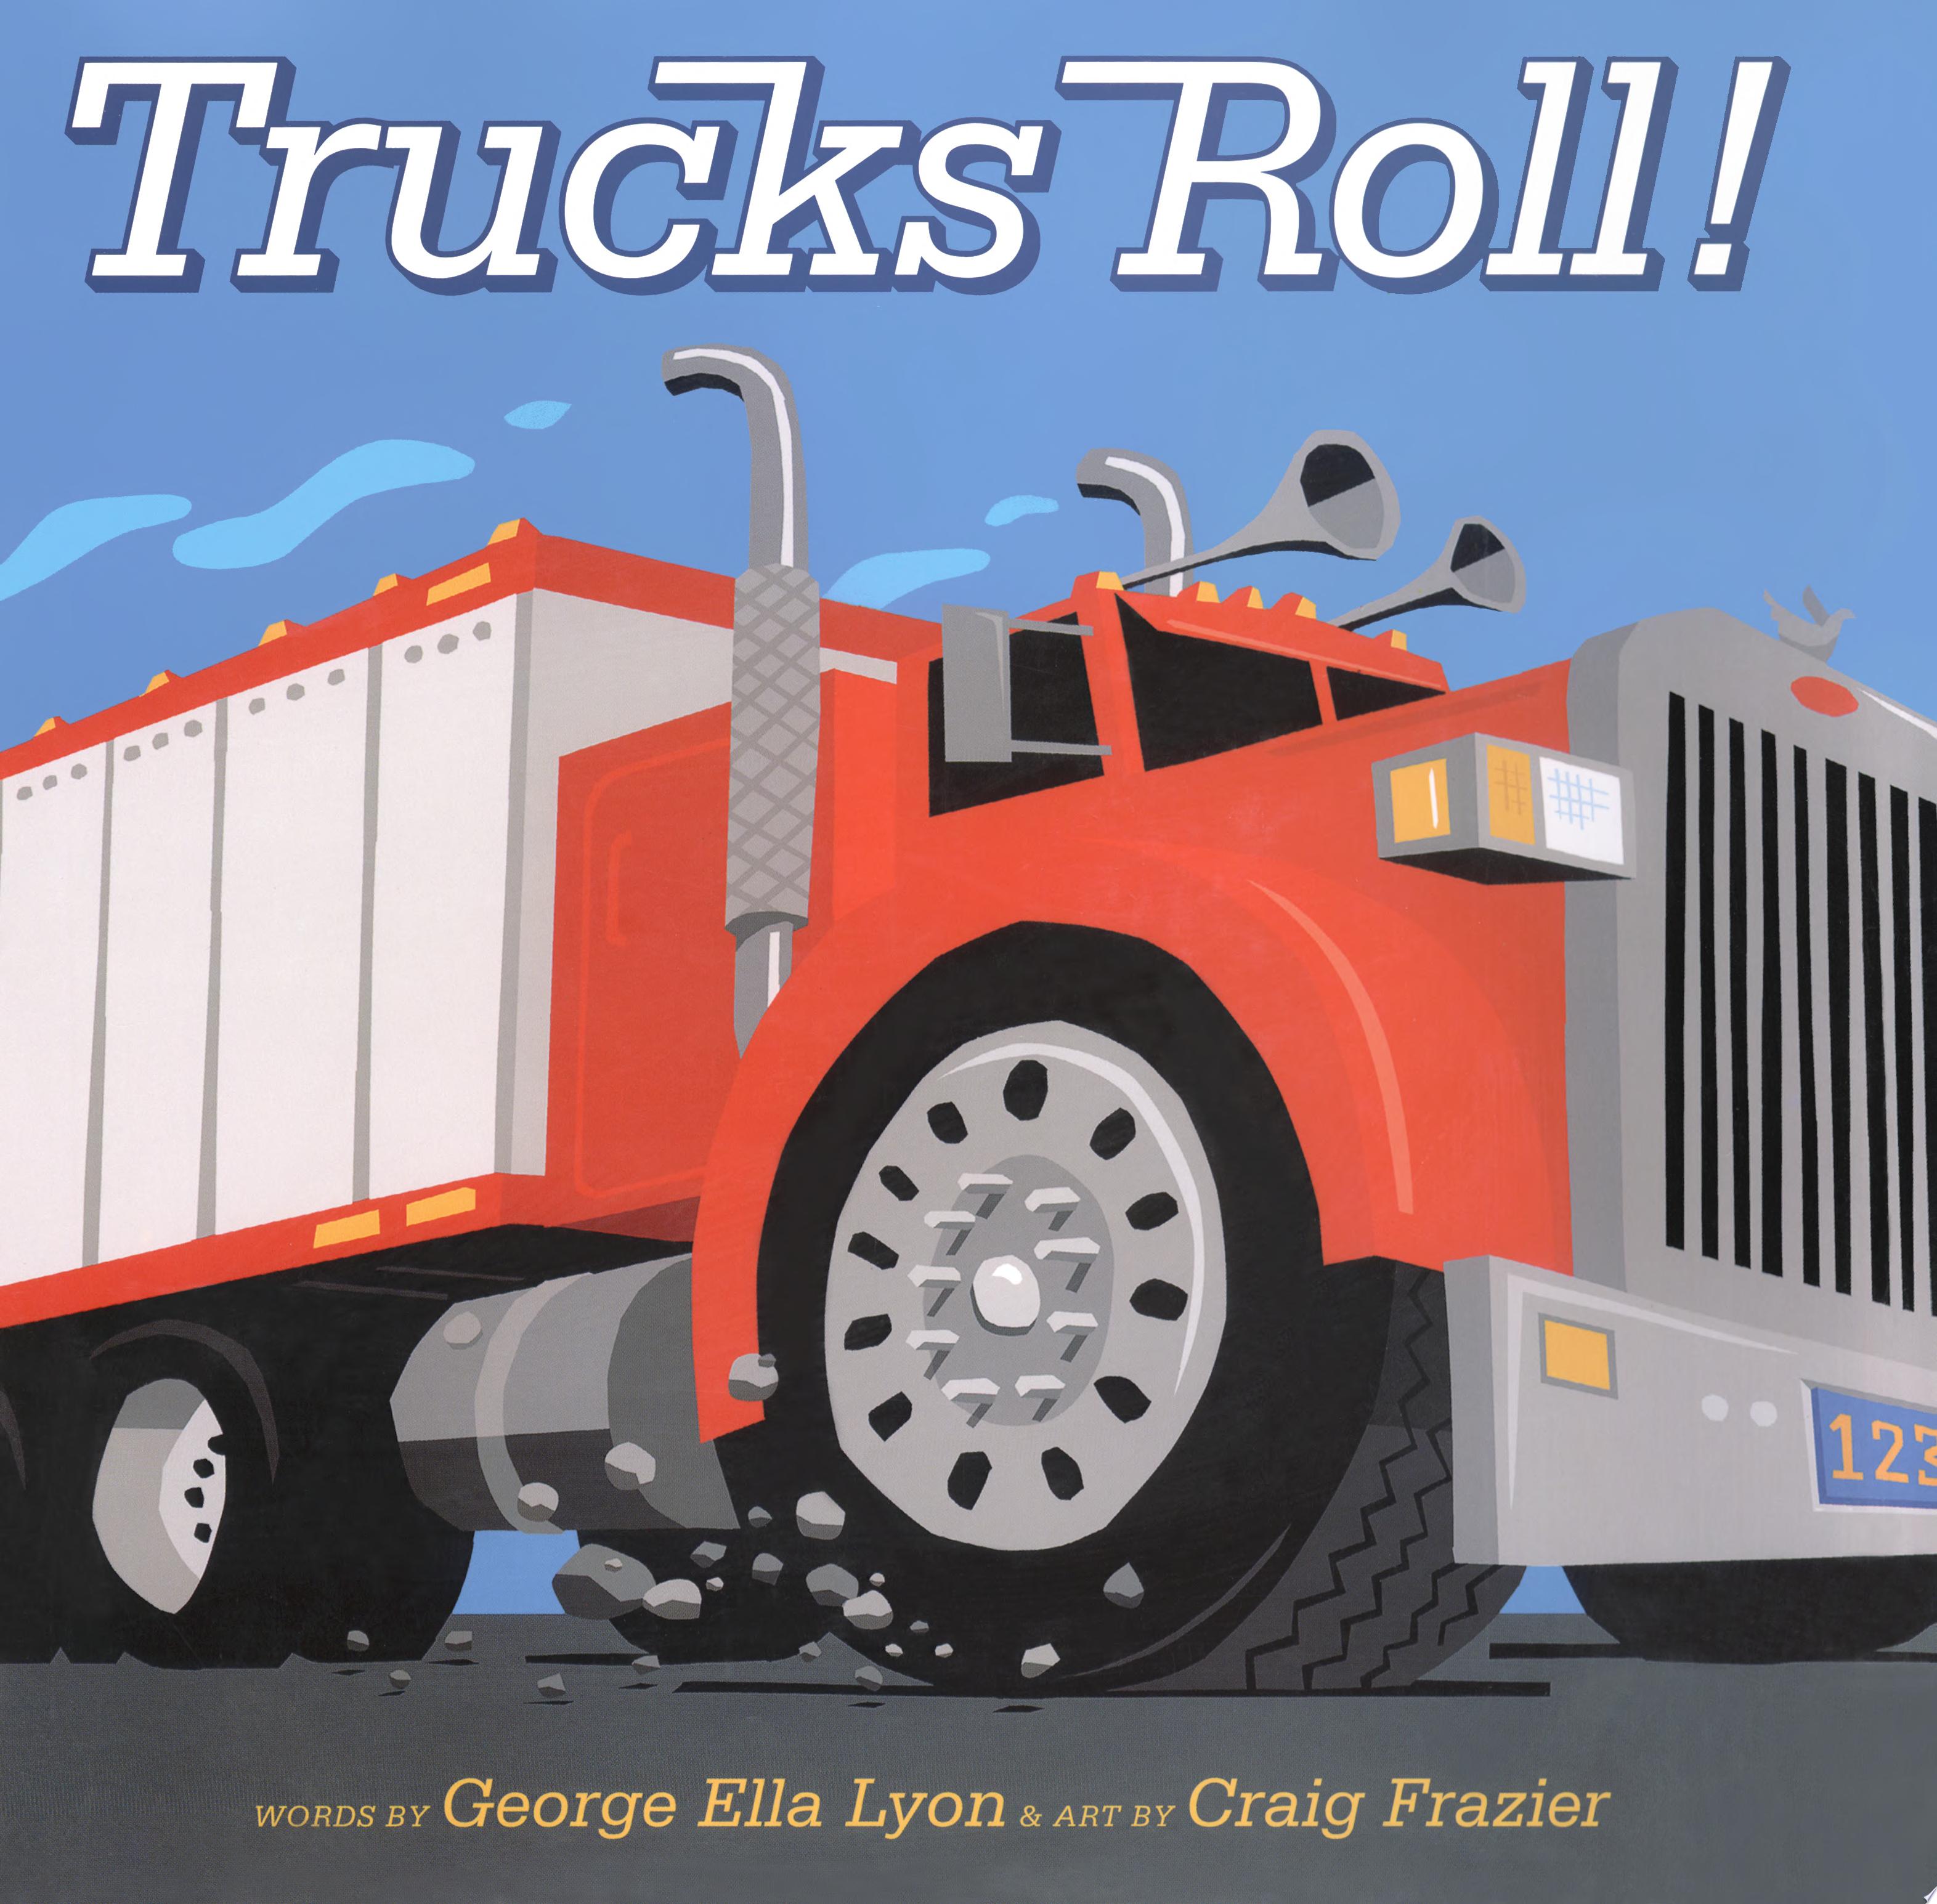 Image for "Trucks Roll!"